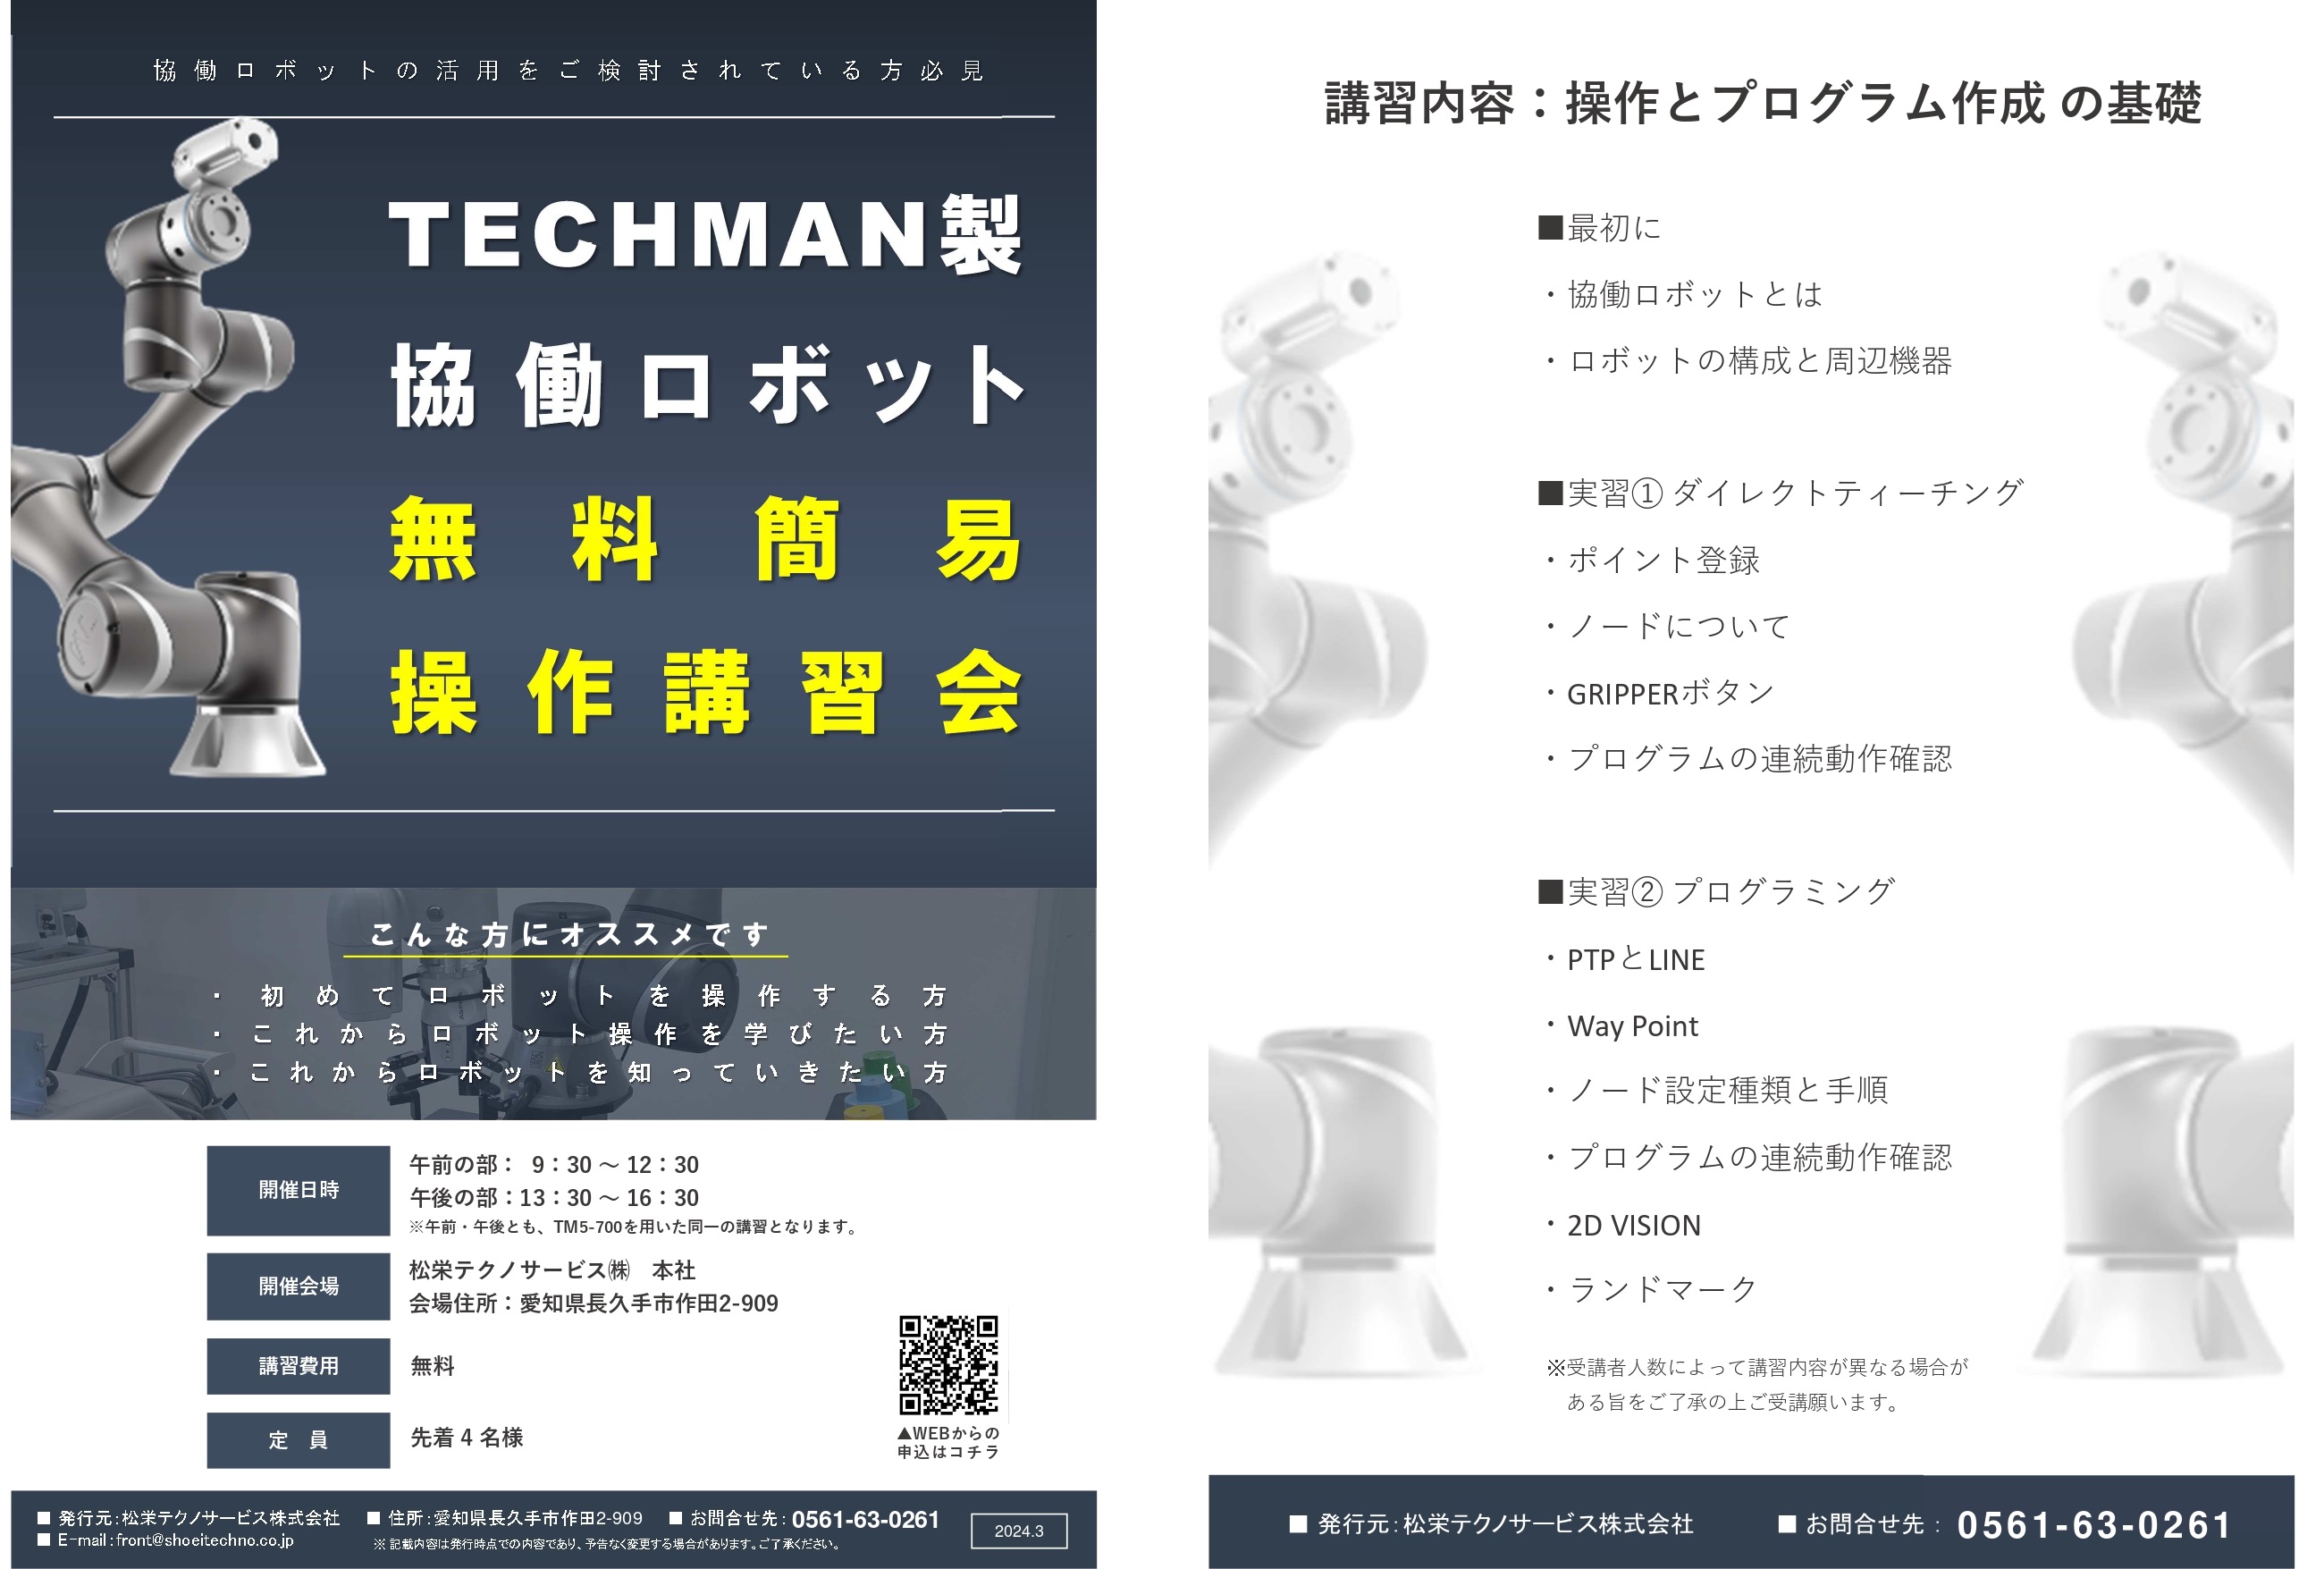 協働ロボットTECHMAN　無料簡易操作講習会開催のお知らせ